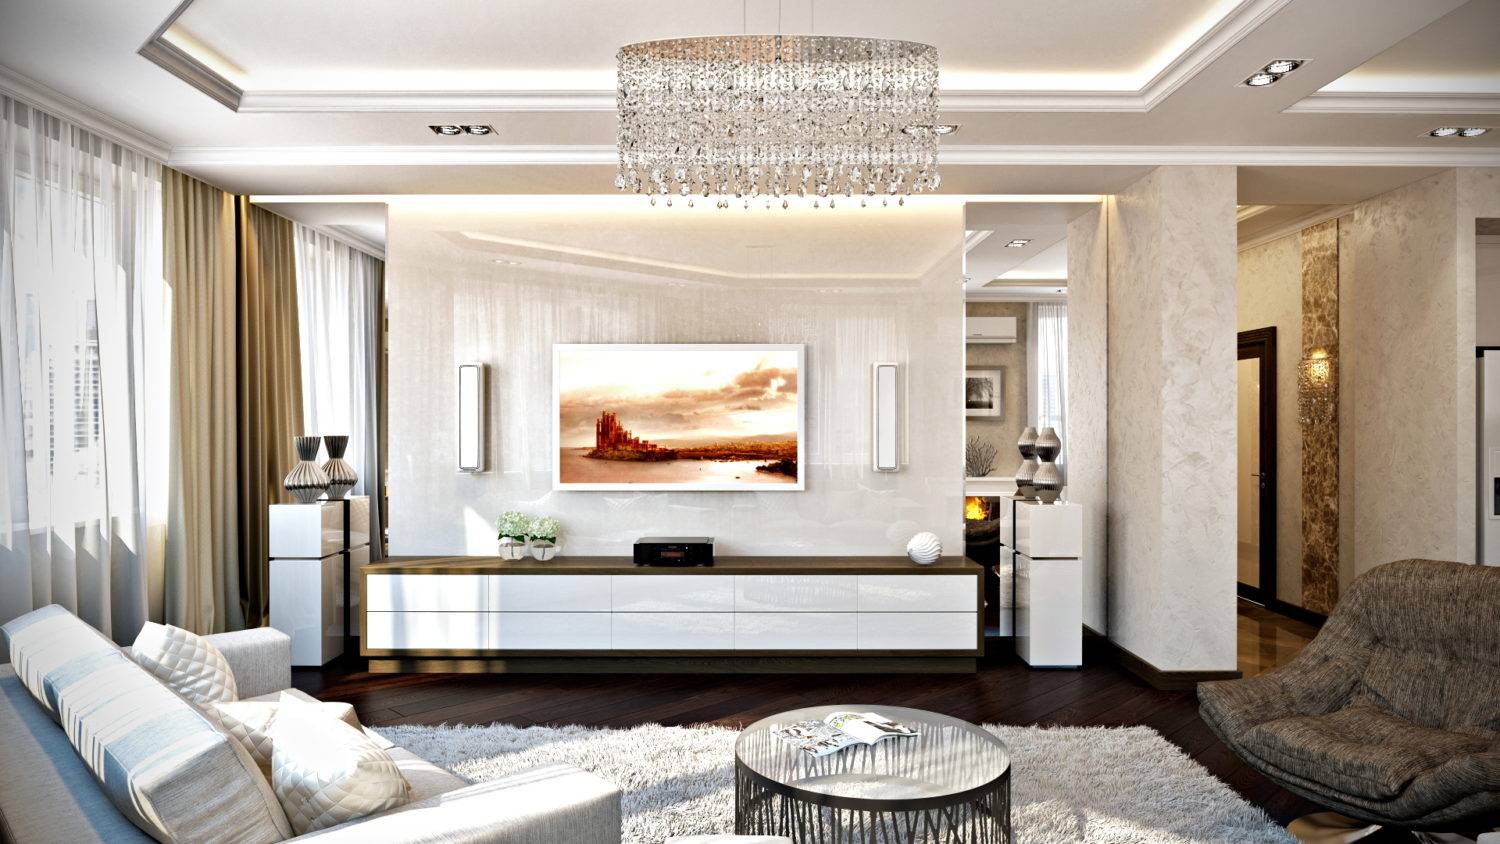 Светлая гостиная в современном стиле: как правильно оформить, как подобрать мебель и освещение, сочетания цветов в дизайне, как выбрать декор, фото интерьеров